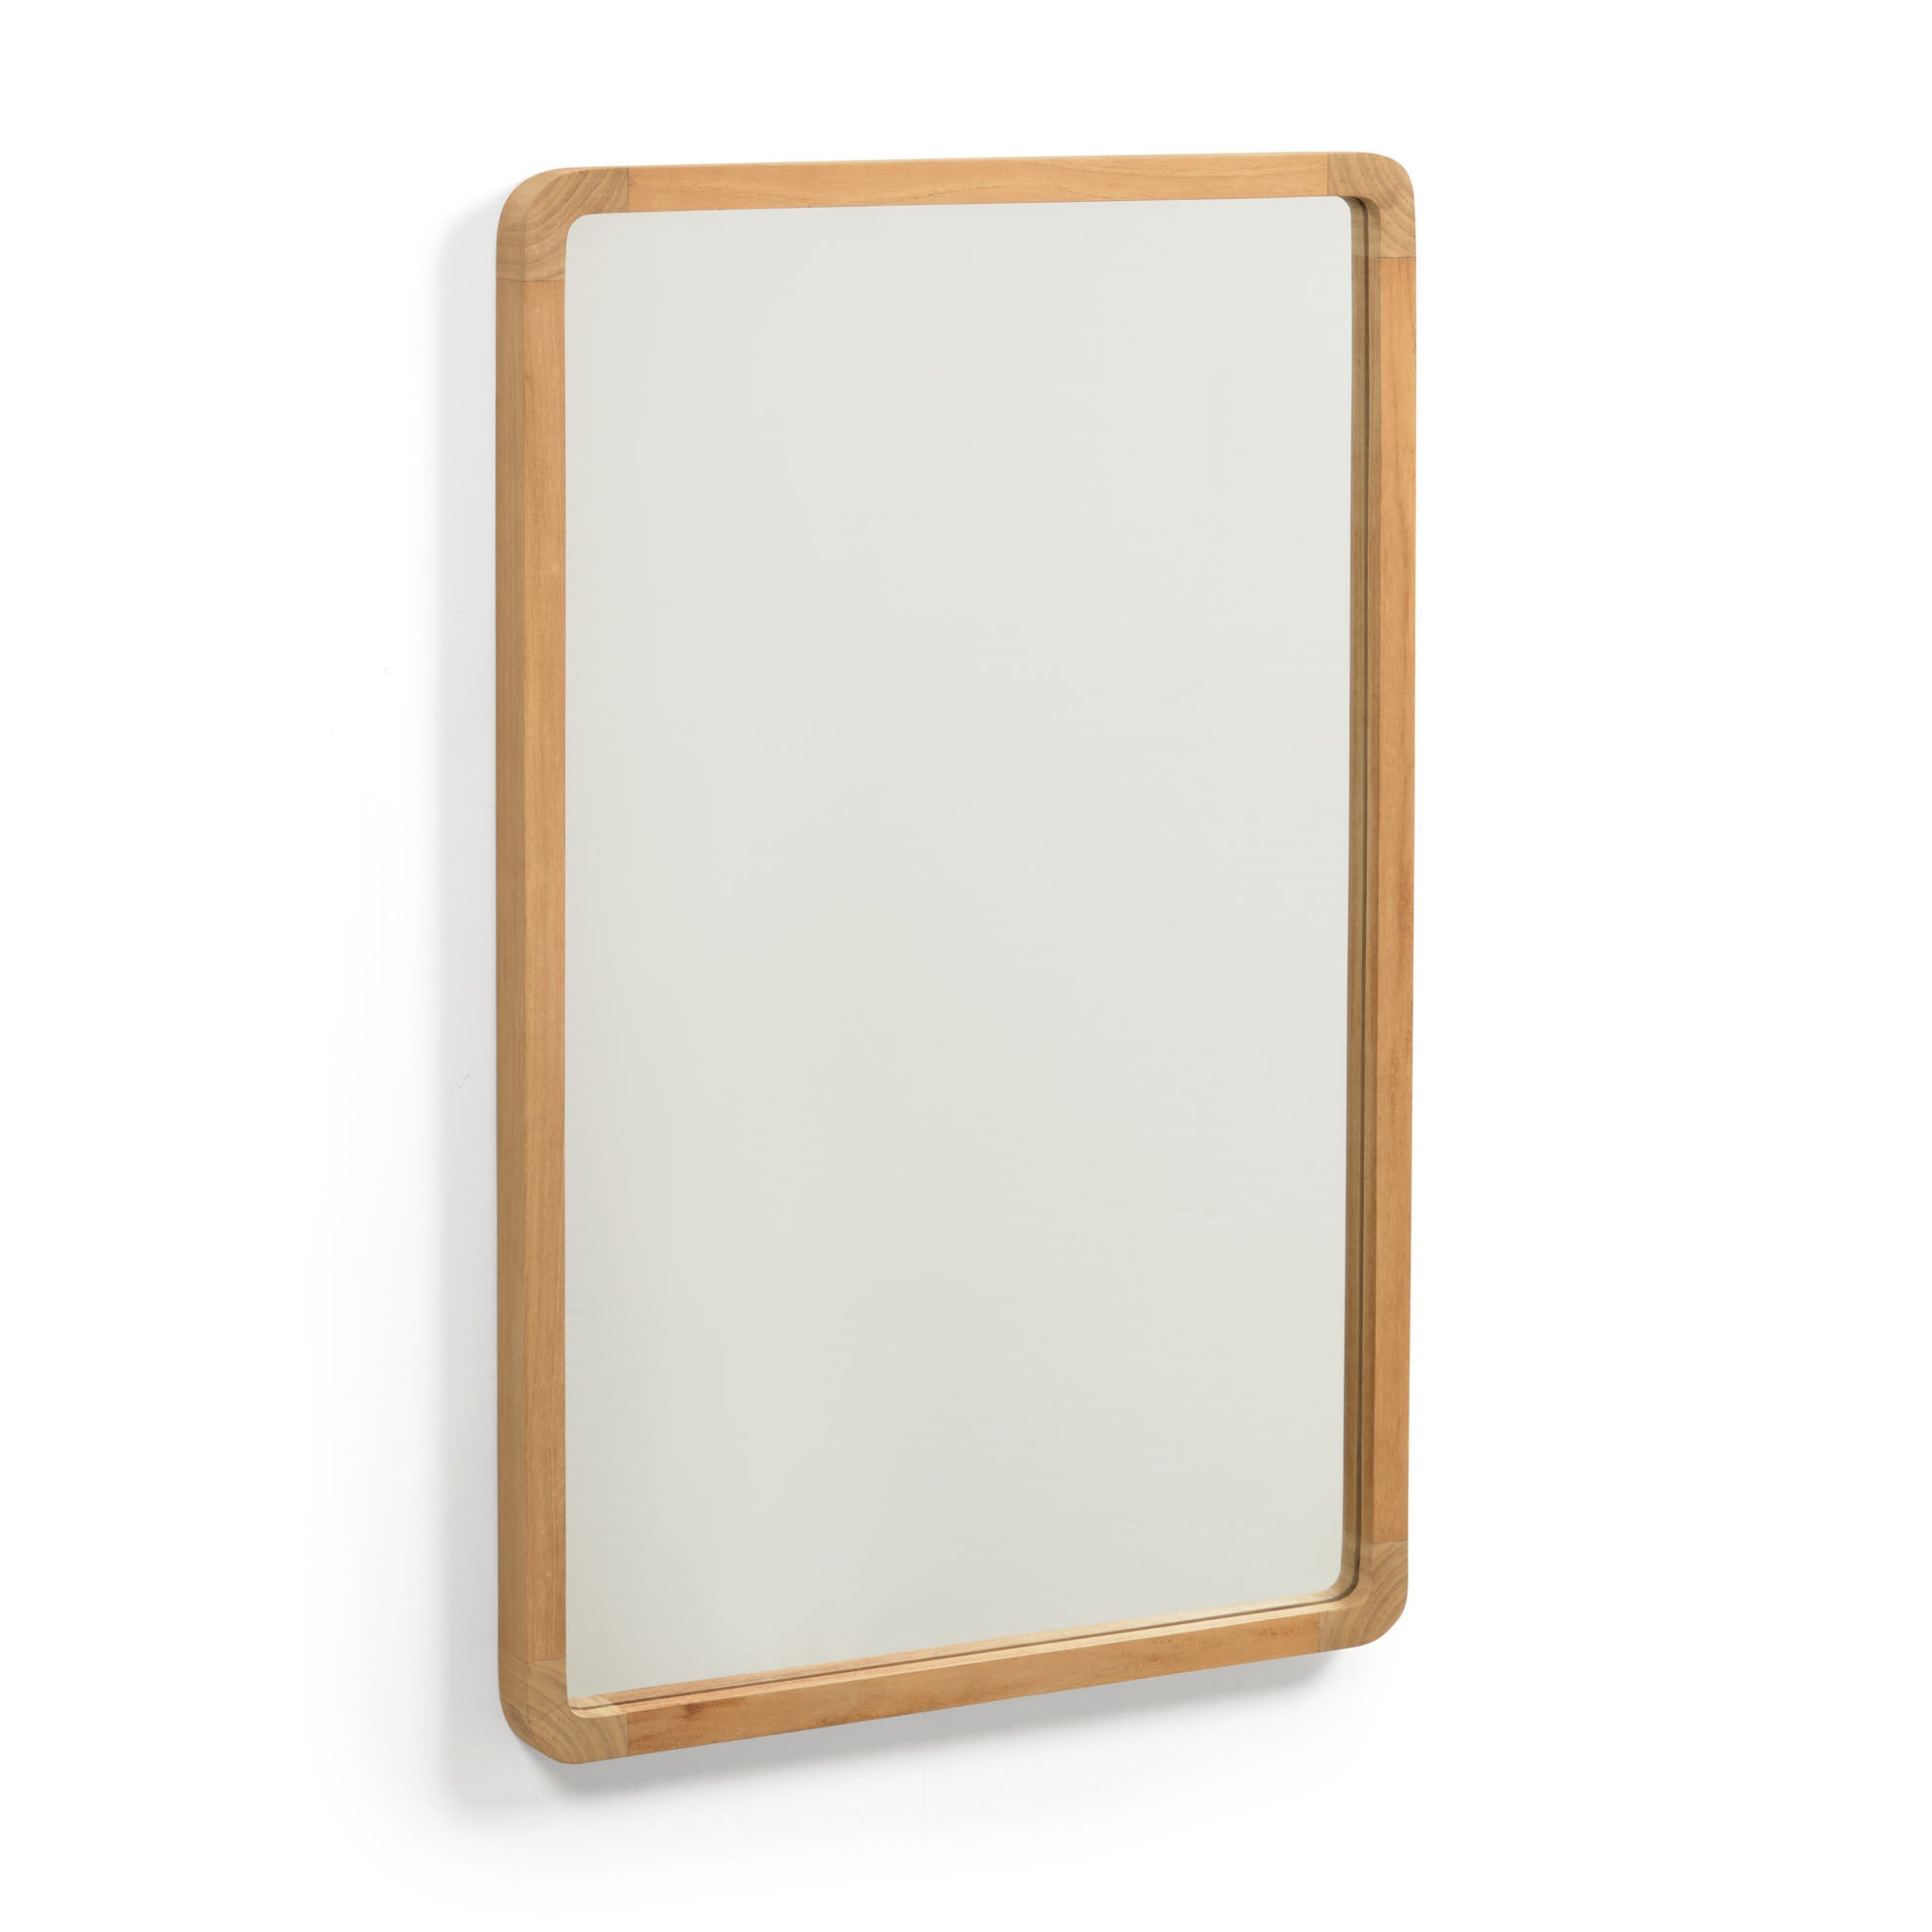 Shamel solid teak mirror 45 x 70 cm